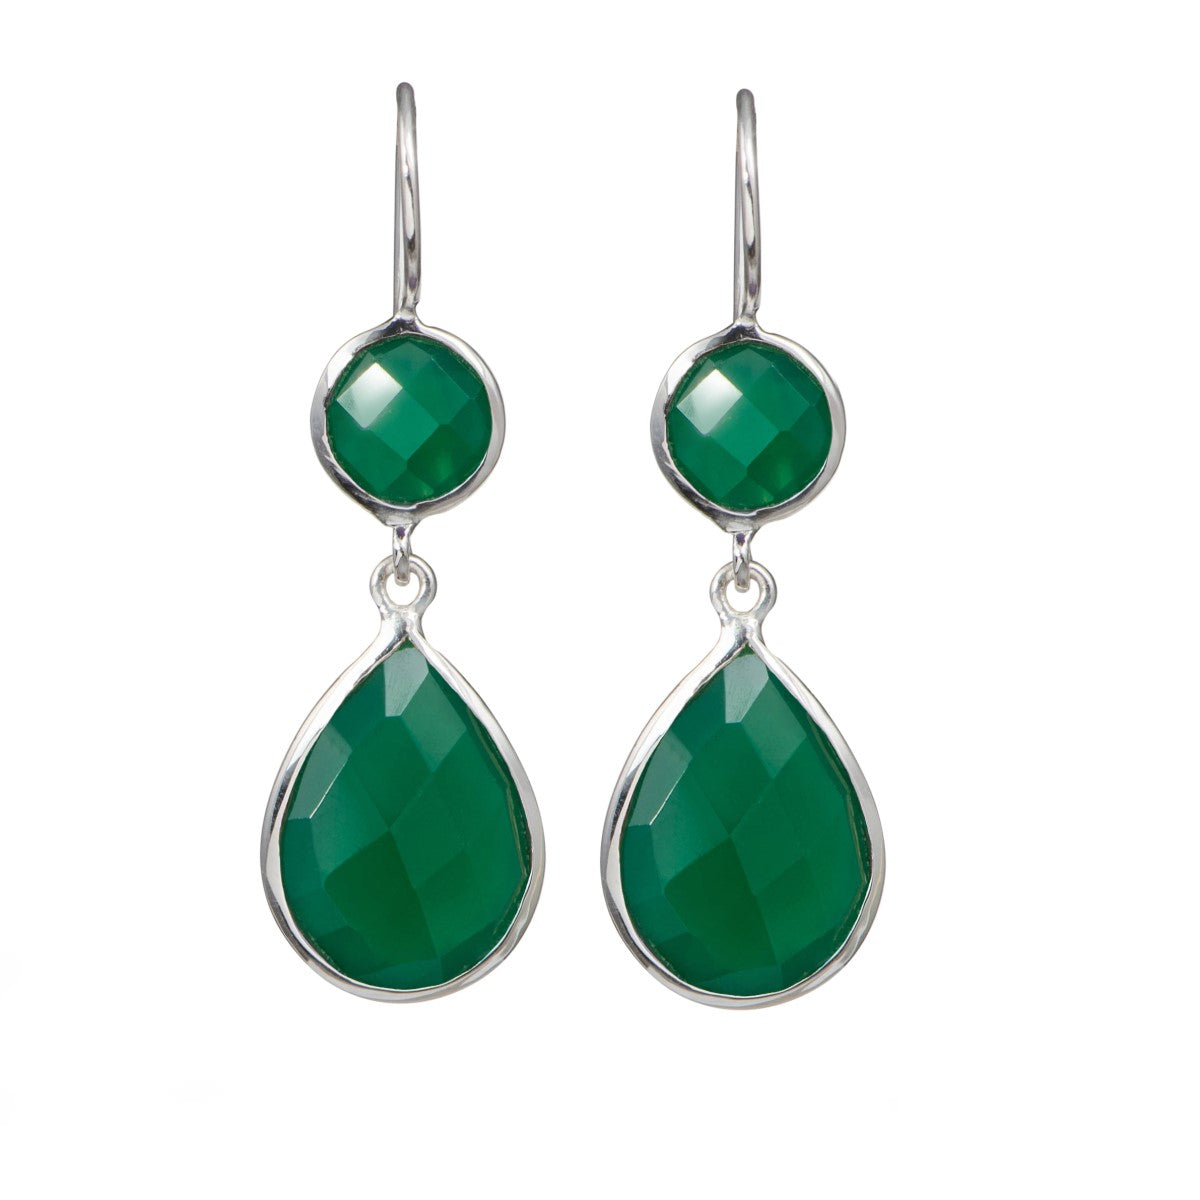 Green Onyx Gemstone Two Stone Earrings in Sterling Silver - Teardrop